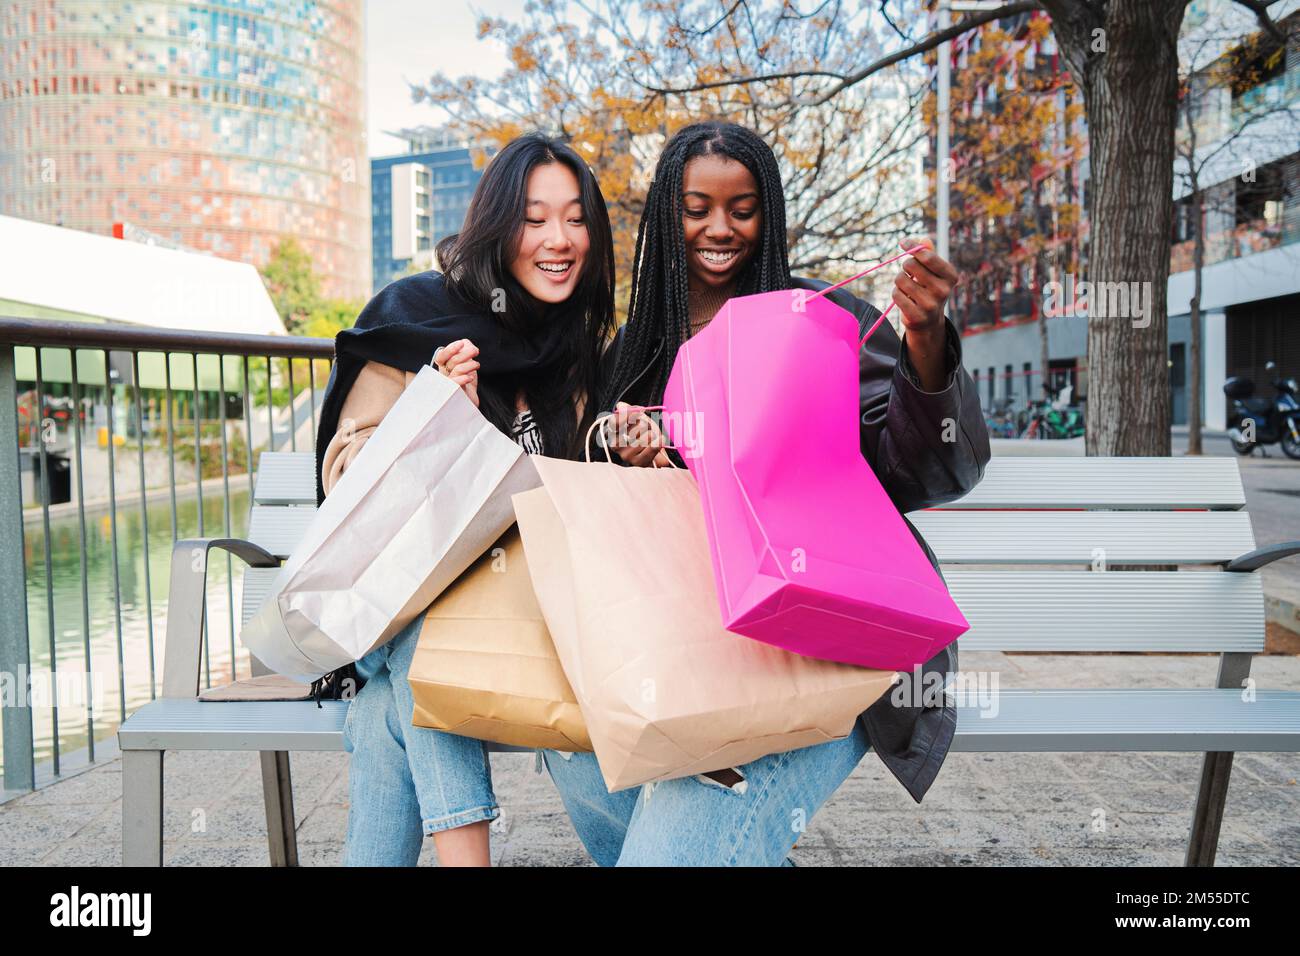 Deux jeunes femmes multiraciales souriant et regardant à l'intérieur d'un sac de shopping assis sur un banc. Quelques amis heureux montrant leurs achats sur une semaine de vente. Concept de consommables. Photo de haute qualité Banque D'Images